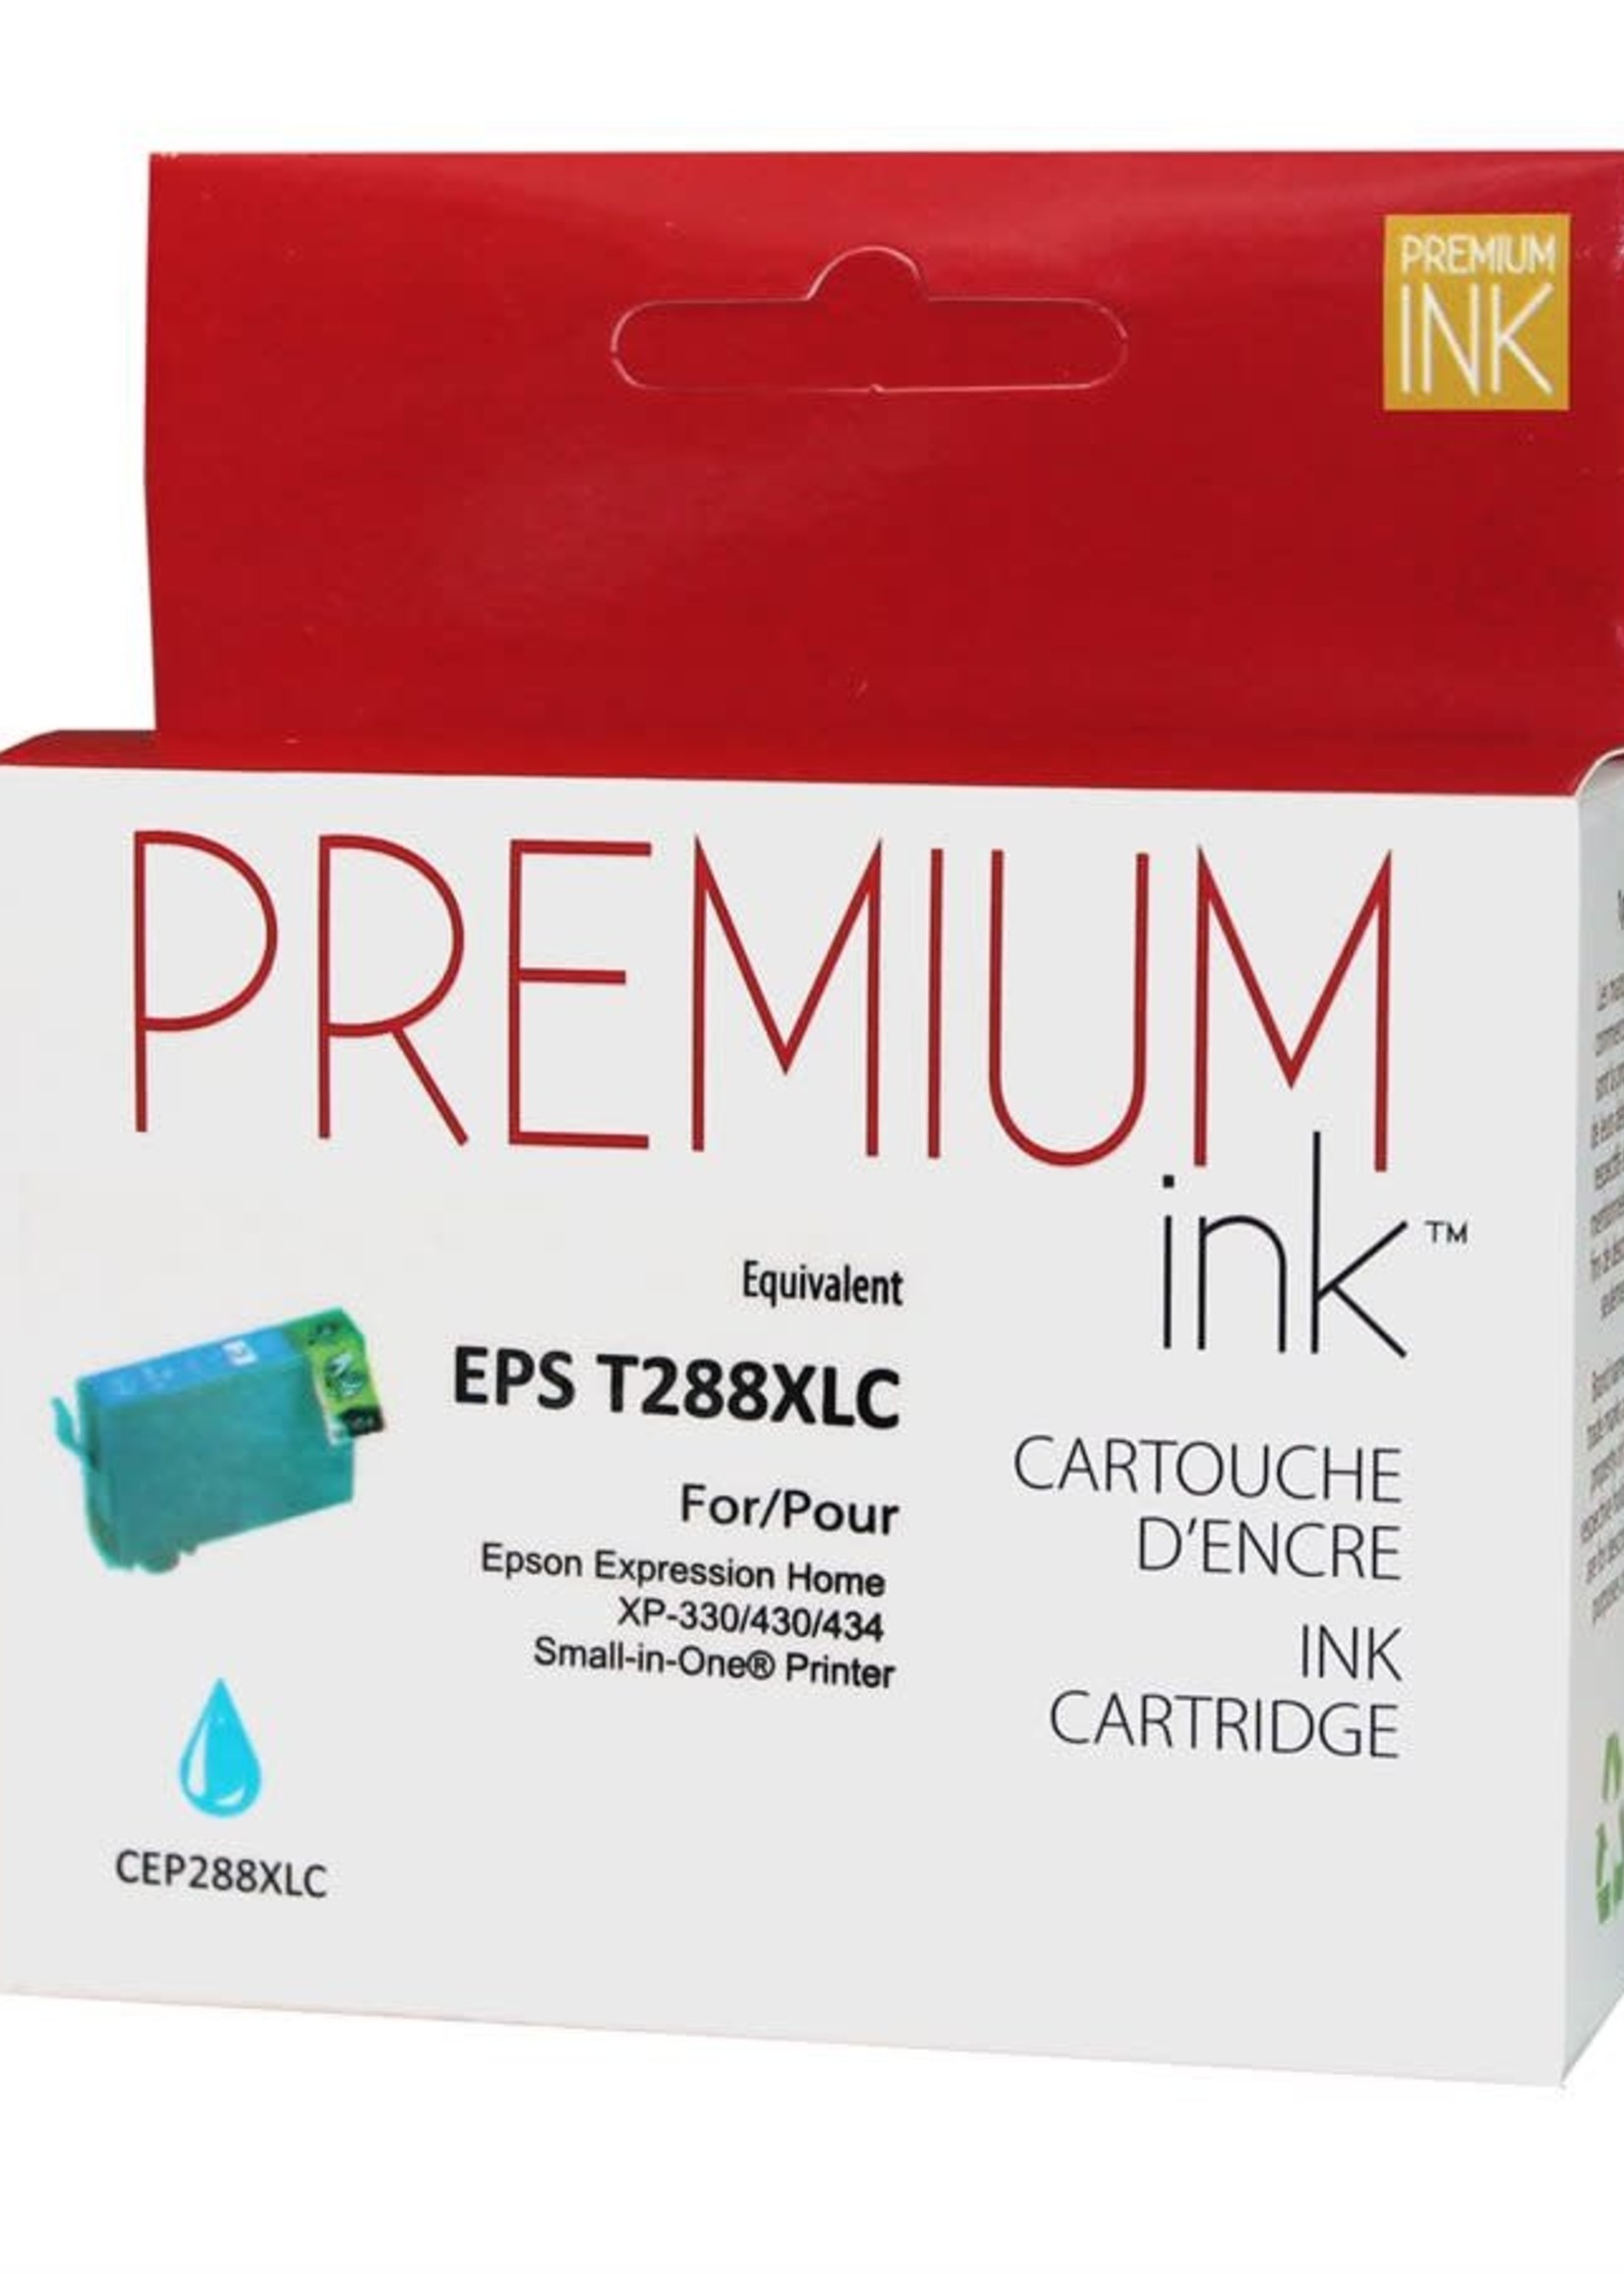 EPS T288XL C PREMIUM INK